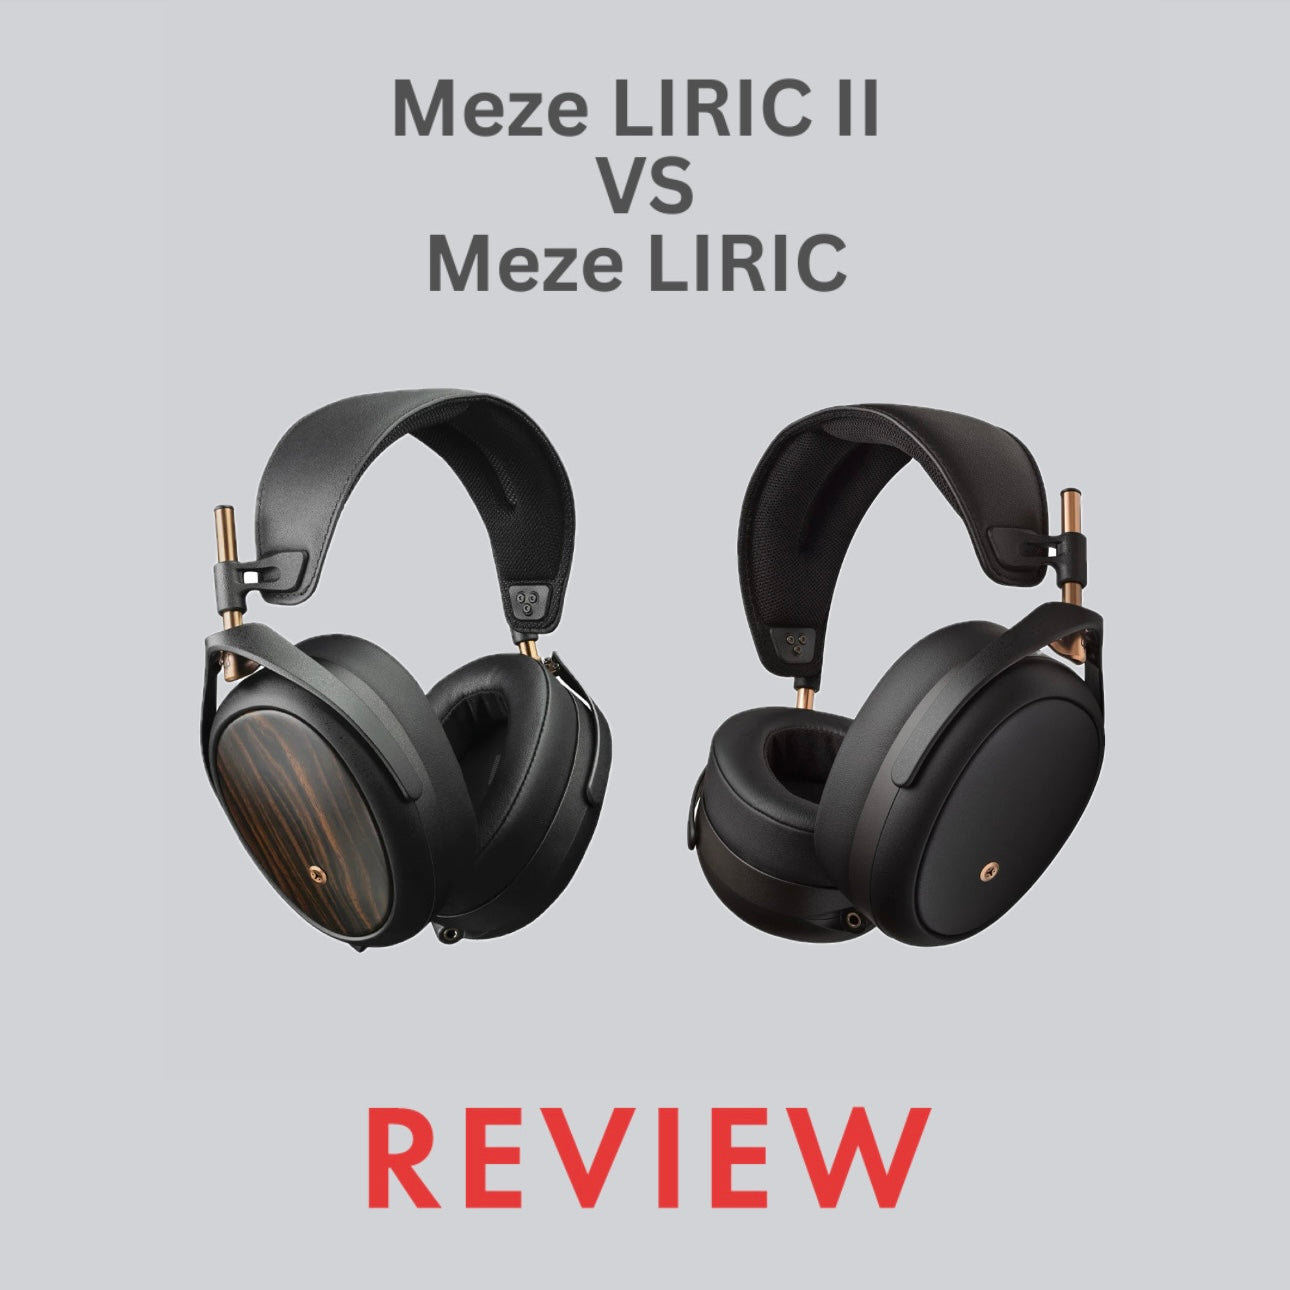 Meze LIRIC II vs Meze LIRIC Comparison Review